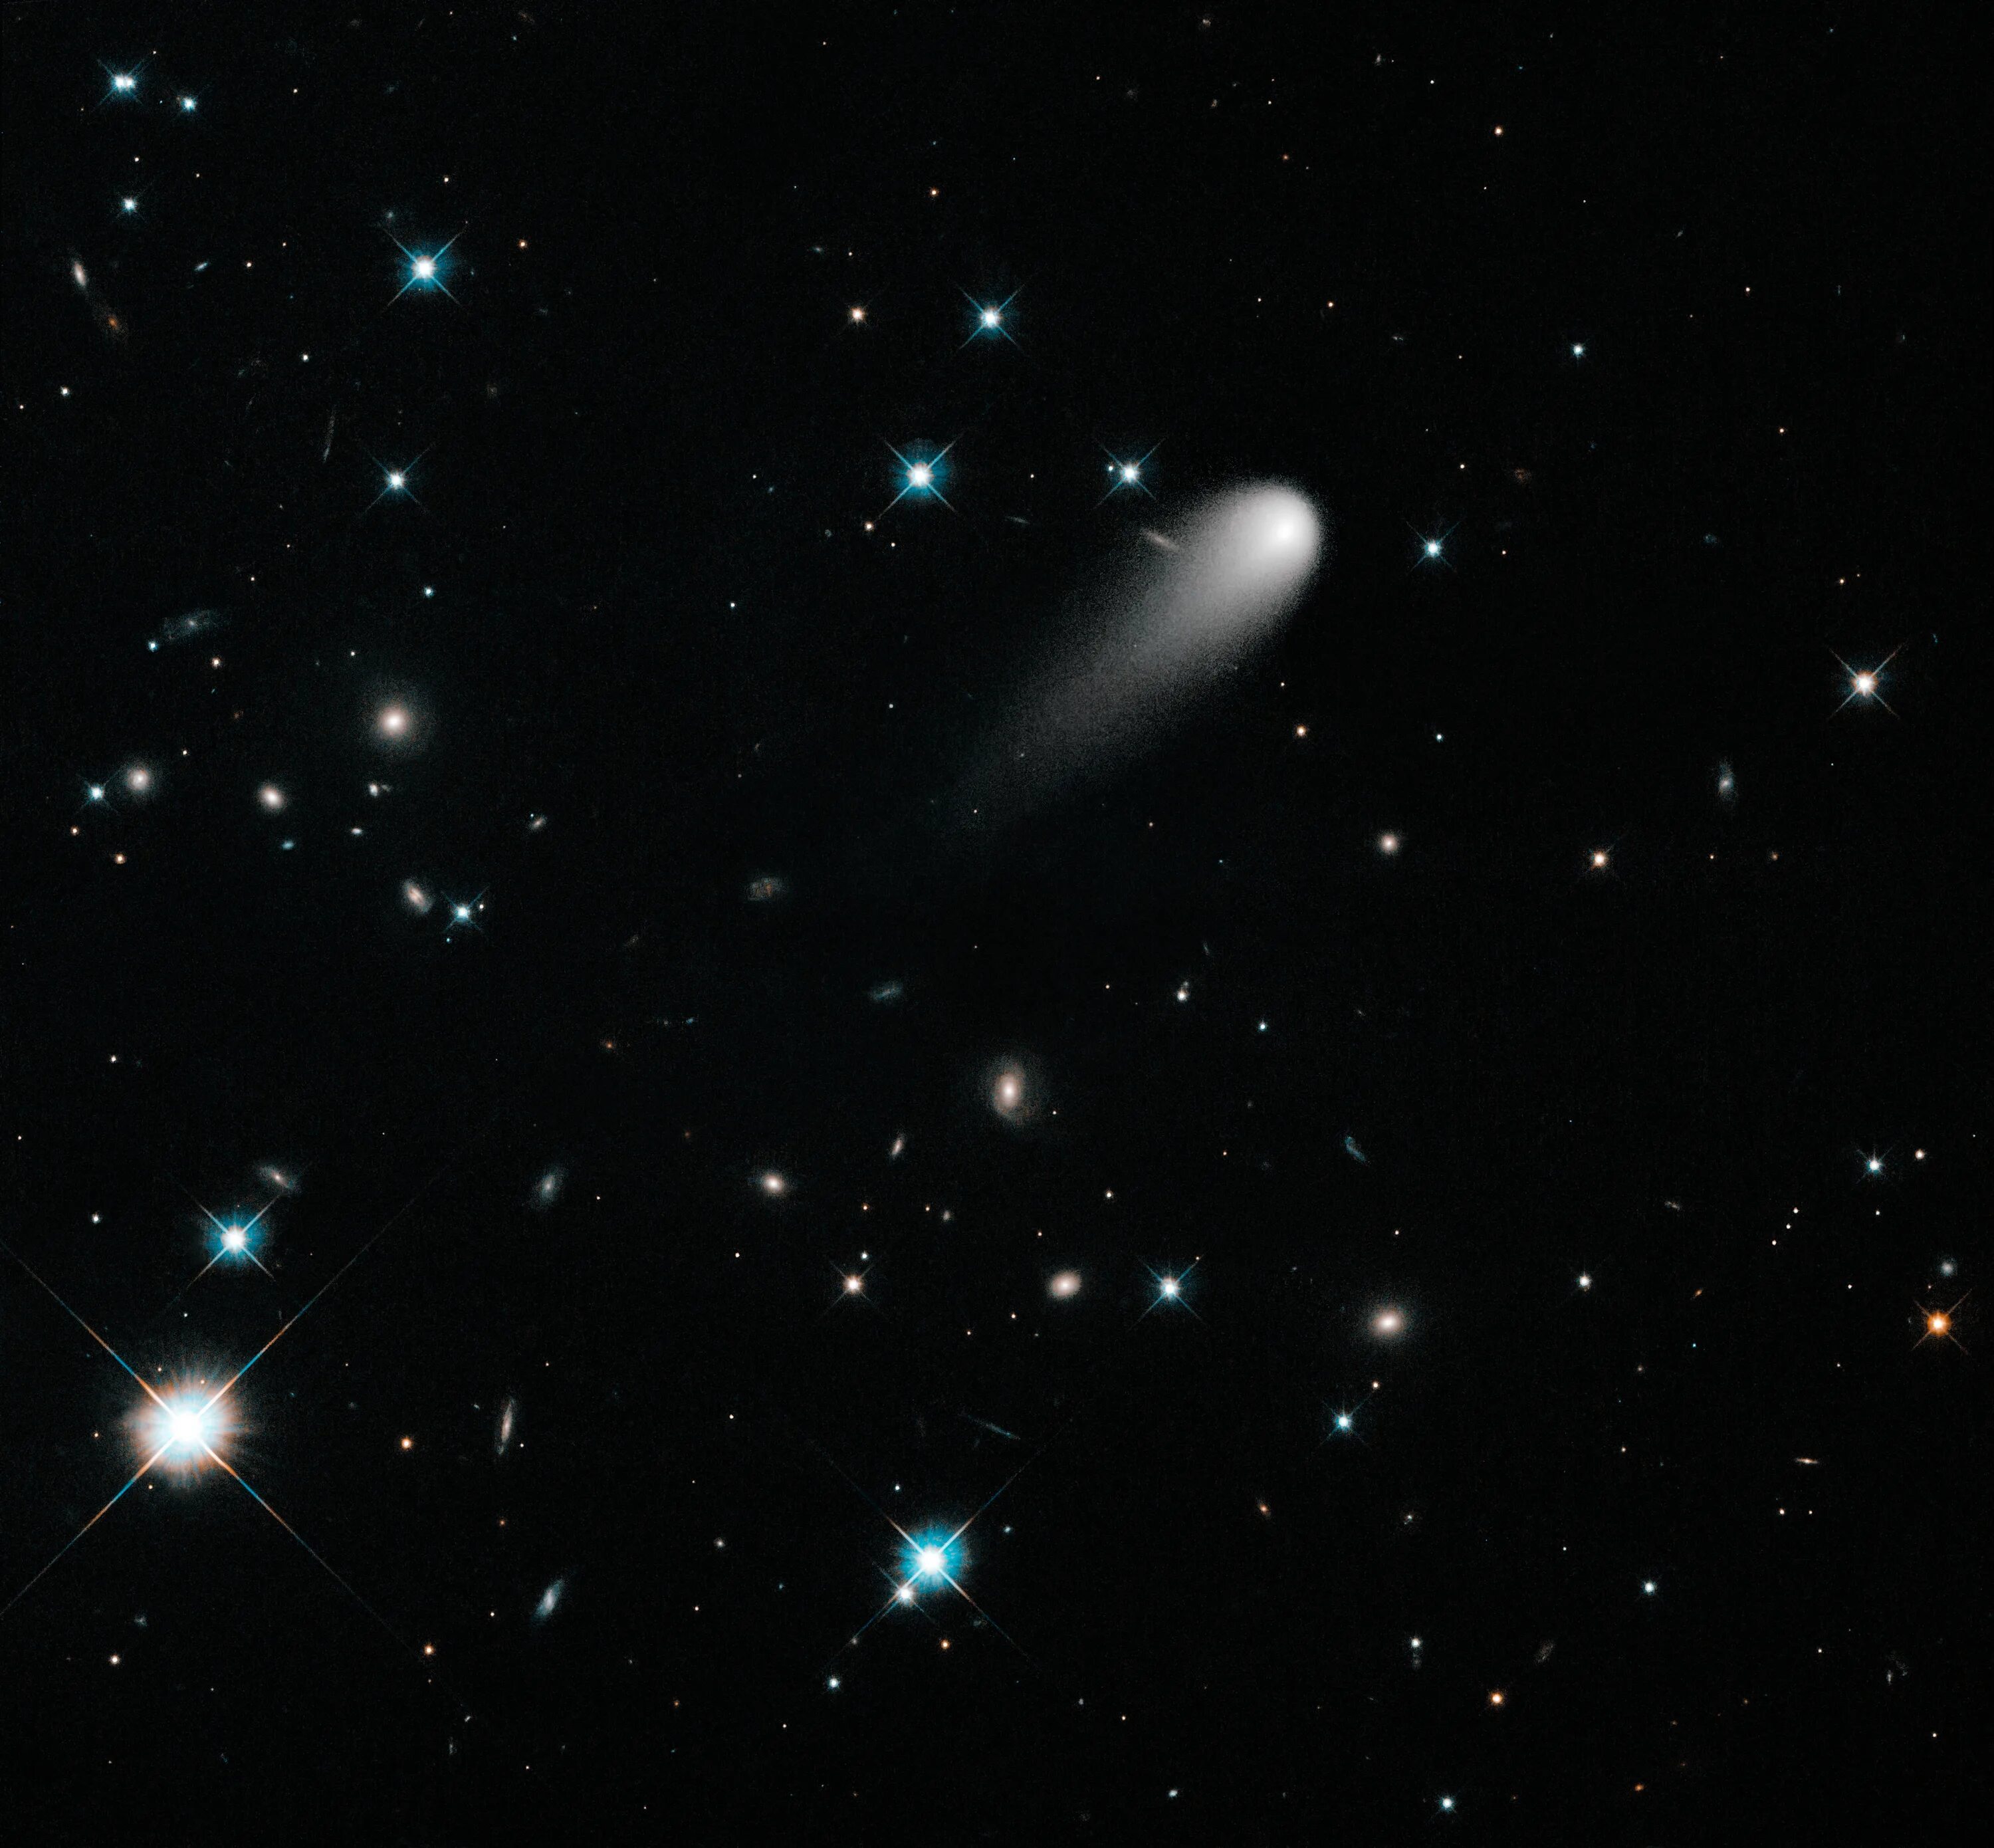 Комета Ison. C/2012 s1 Ison. Снимок Хаббл Комета. Комета с телескопа Хаббл.